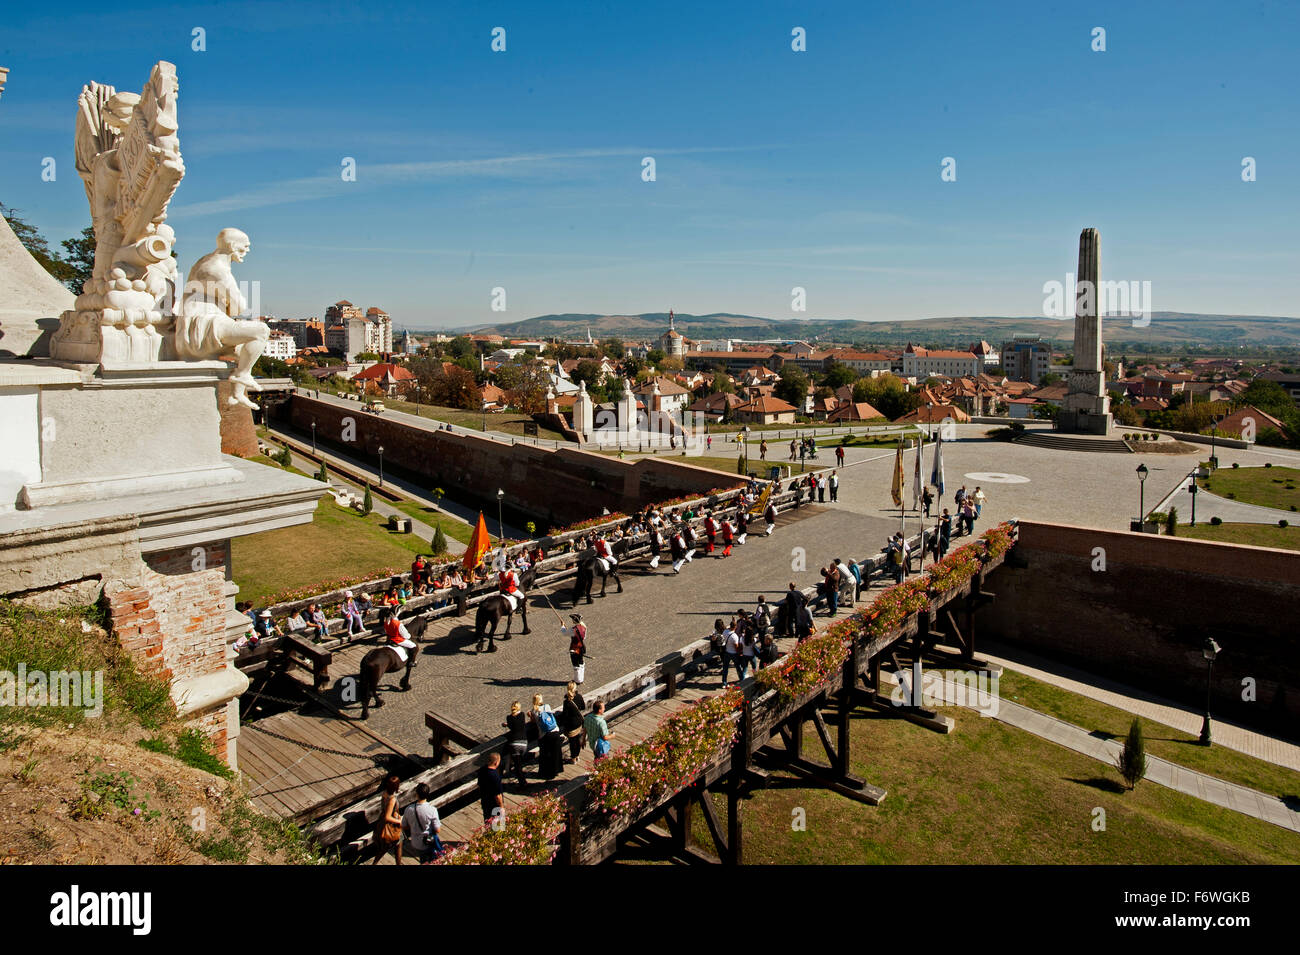 El cambio de guardia en la fortaleza, Alba Iulia, Transilvania, Rumania Foto de stock